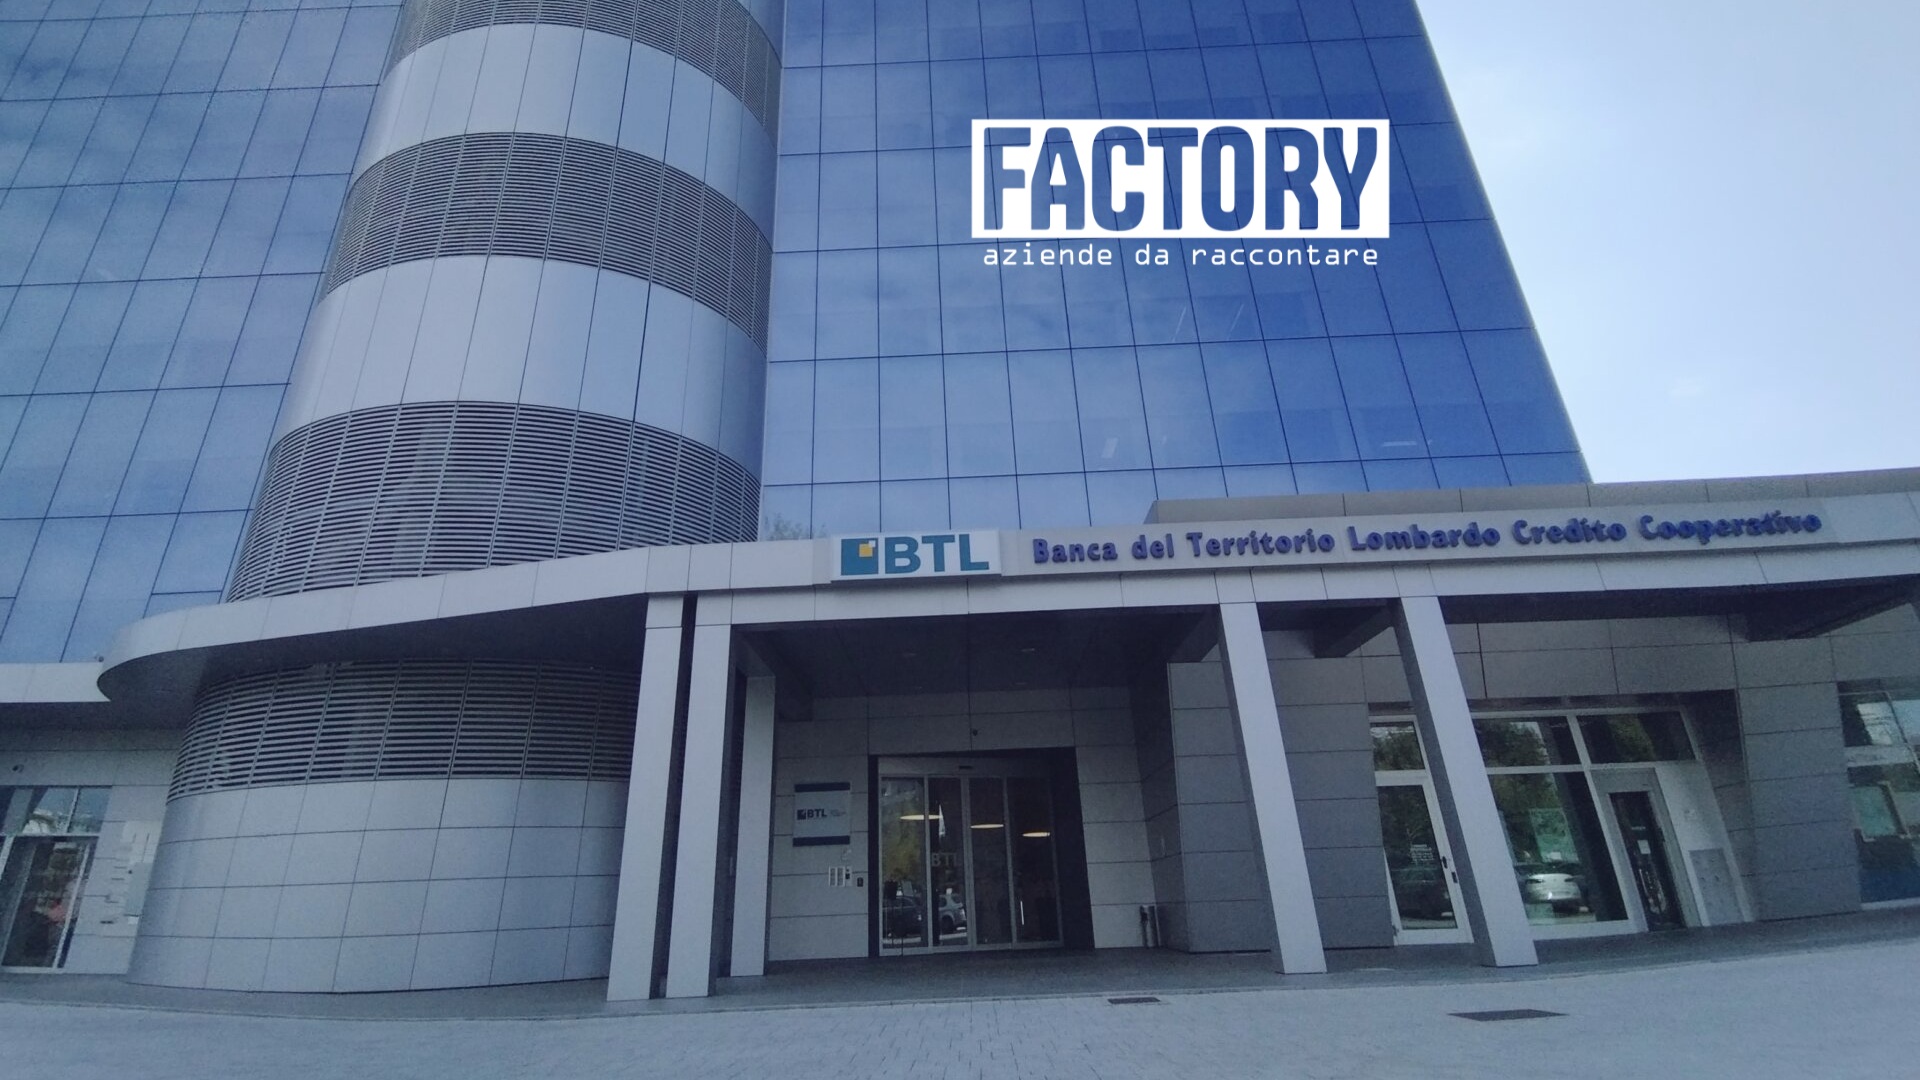 Factory | Finanza sostenibile e solidarietà romagnola